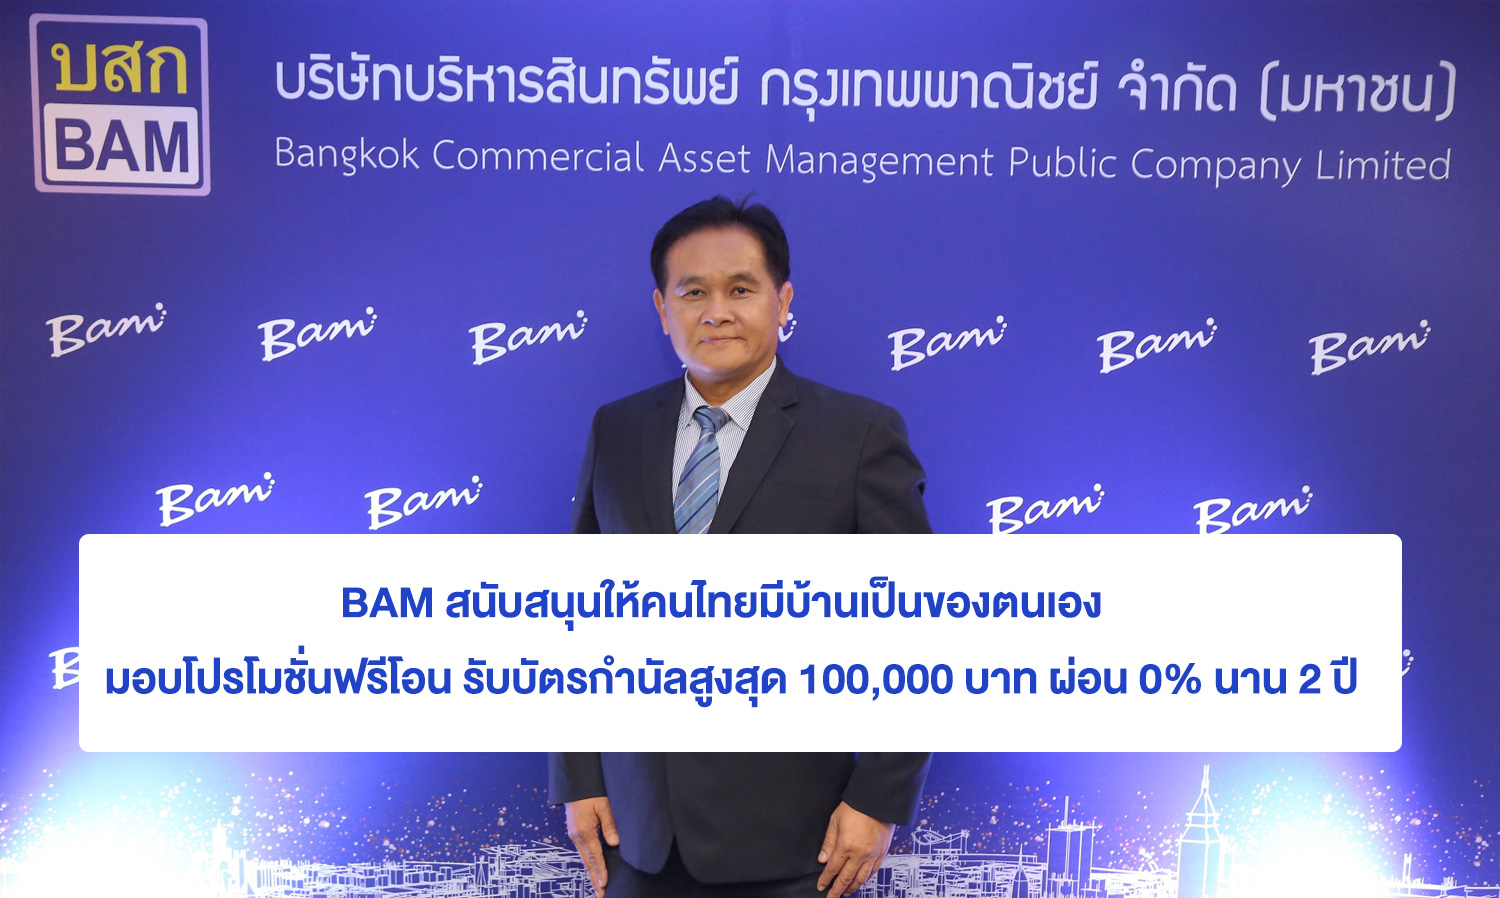 BAM สนับสนุนให้คนไทยมีบ้านเป็นของตนเอง  มอบโปรโมชั่นฟรีโอน รับบัตรกำนัลสูงสุด 100,000 บาท ผ่อน 0% นาน 2 ปี